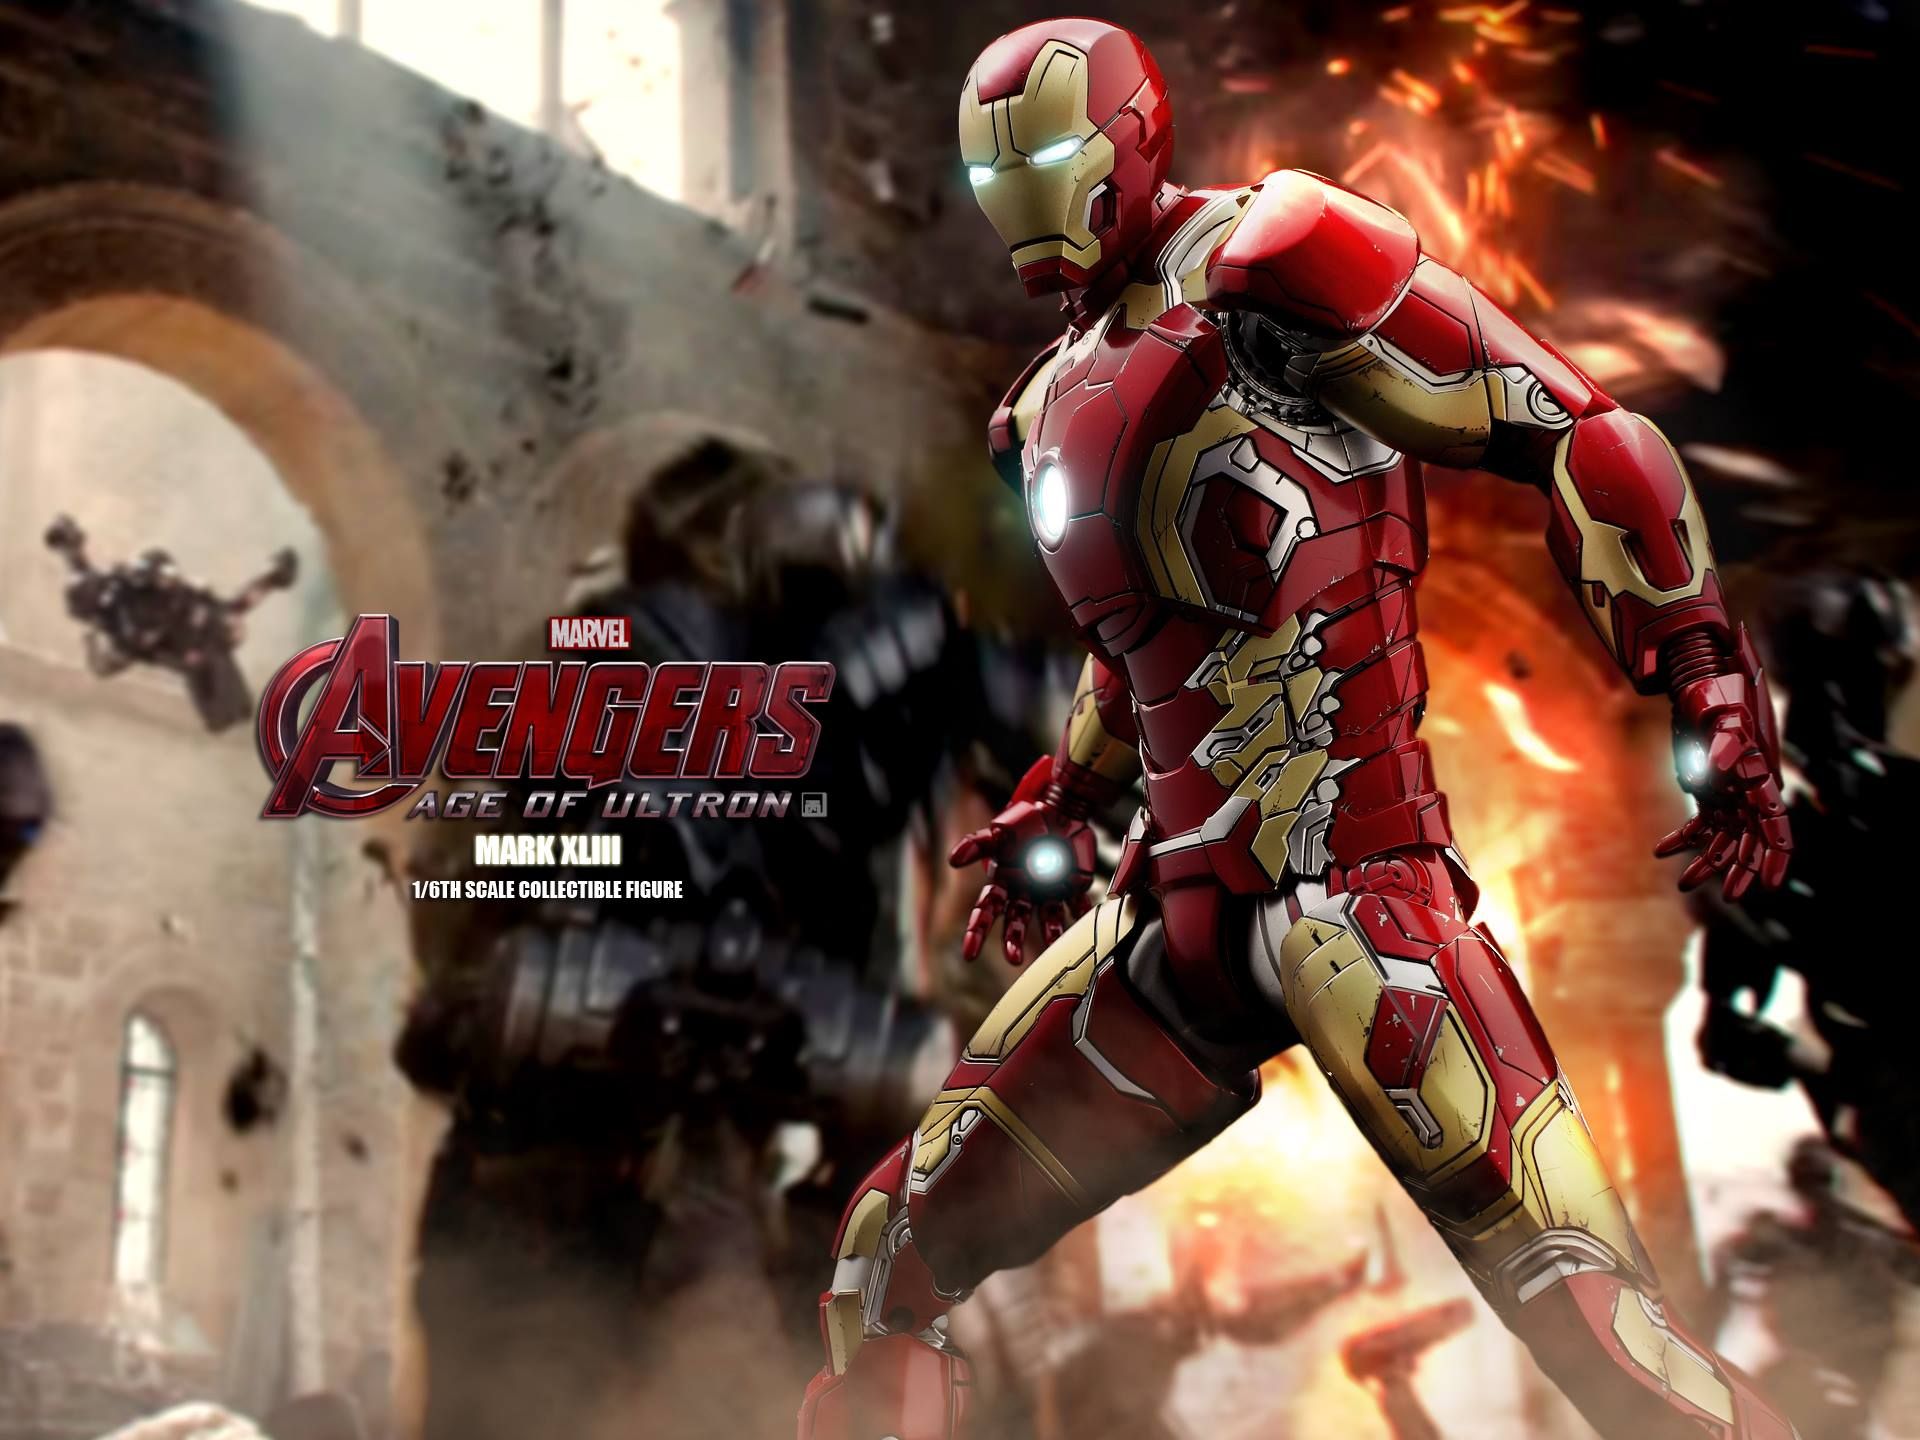 Avengers 2 Iron Man Mark XLIII Action Figure Photo 14